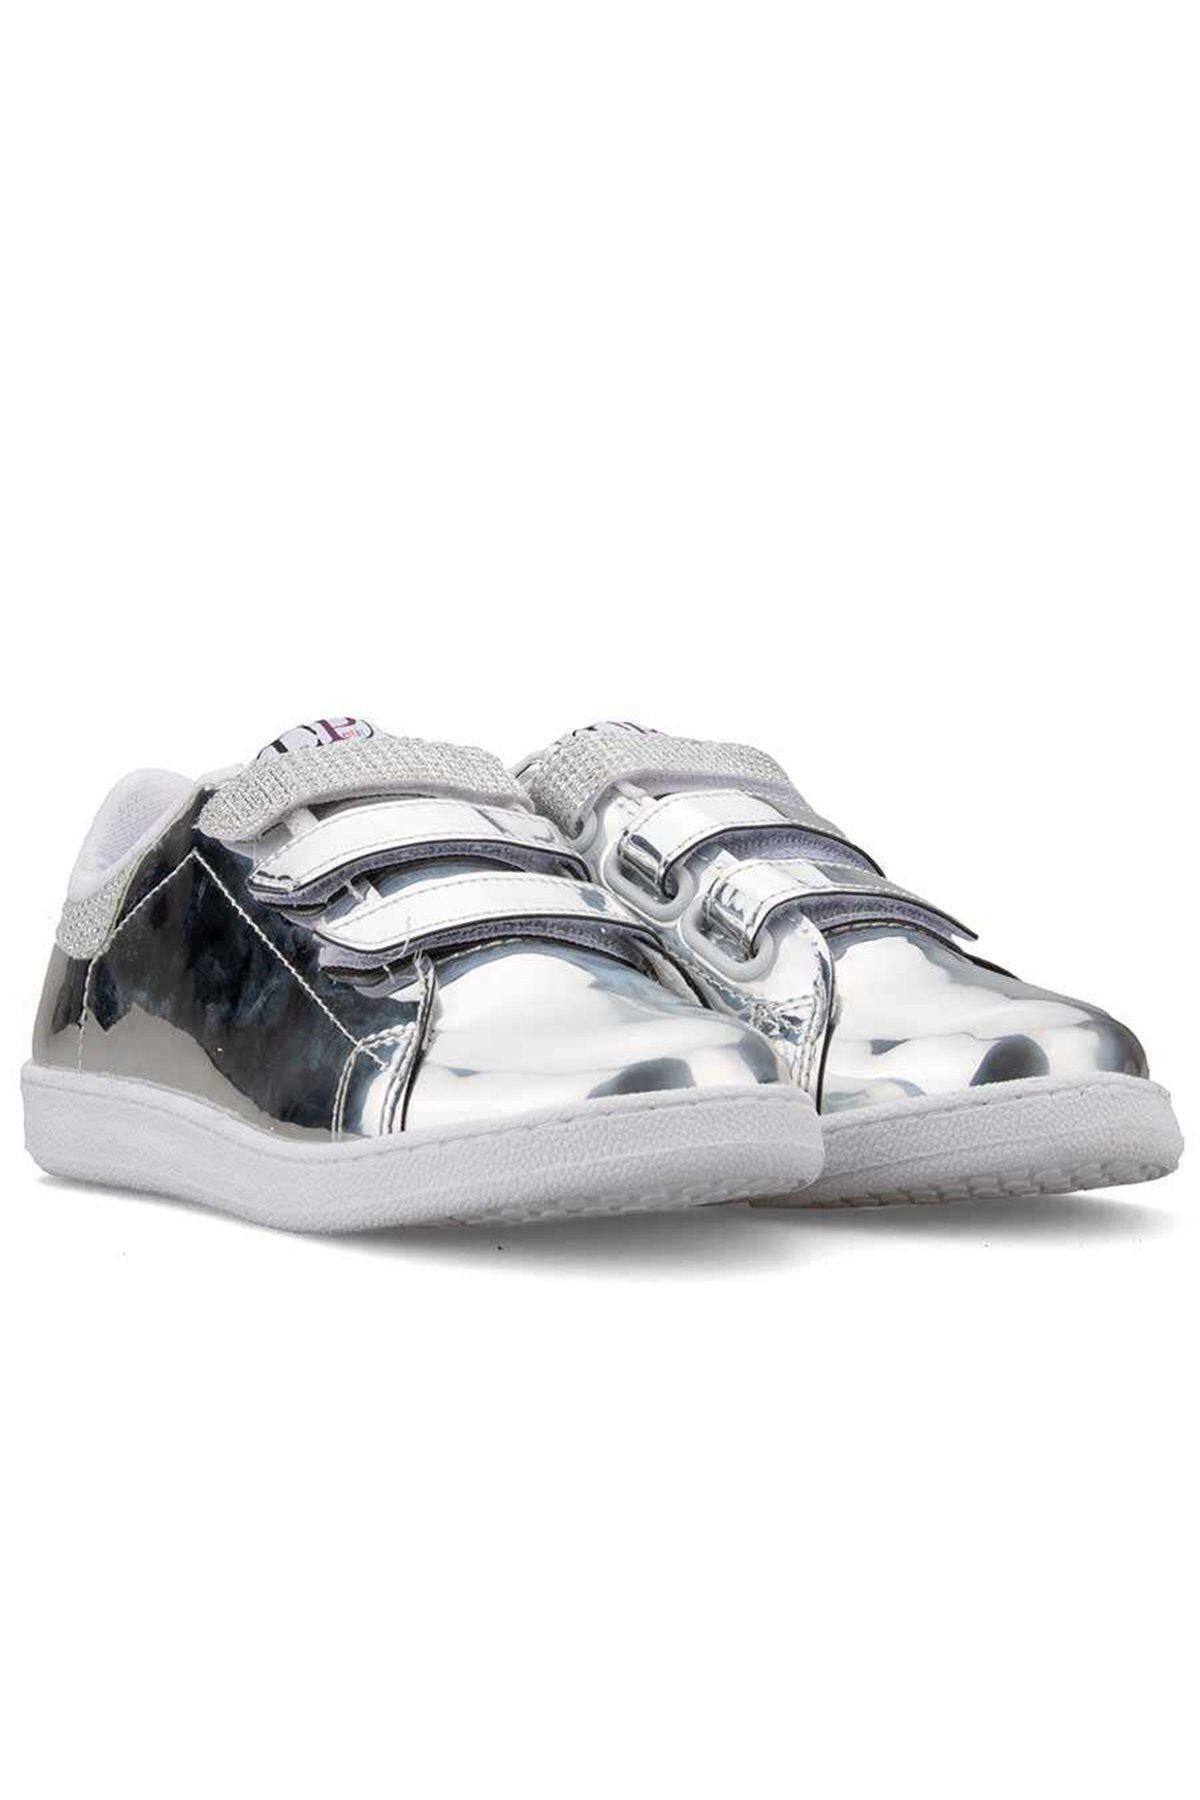 Le Petite kız çocuk günlük kullanım yeni sezon gümüş renk lepetit flet ayakkabı